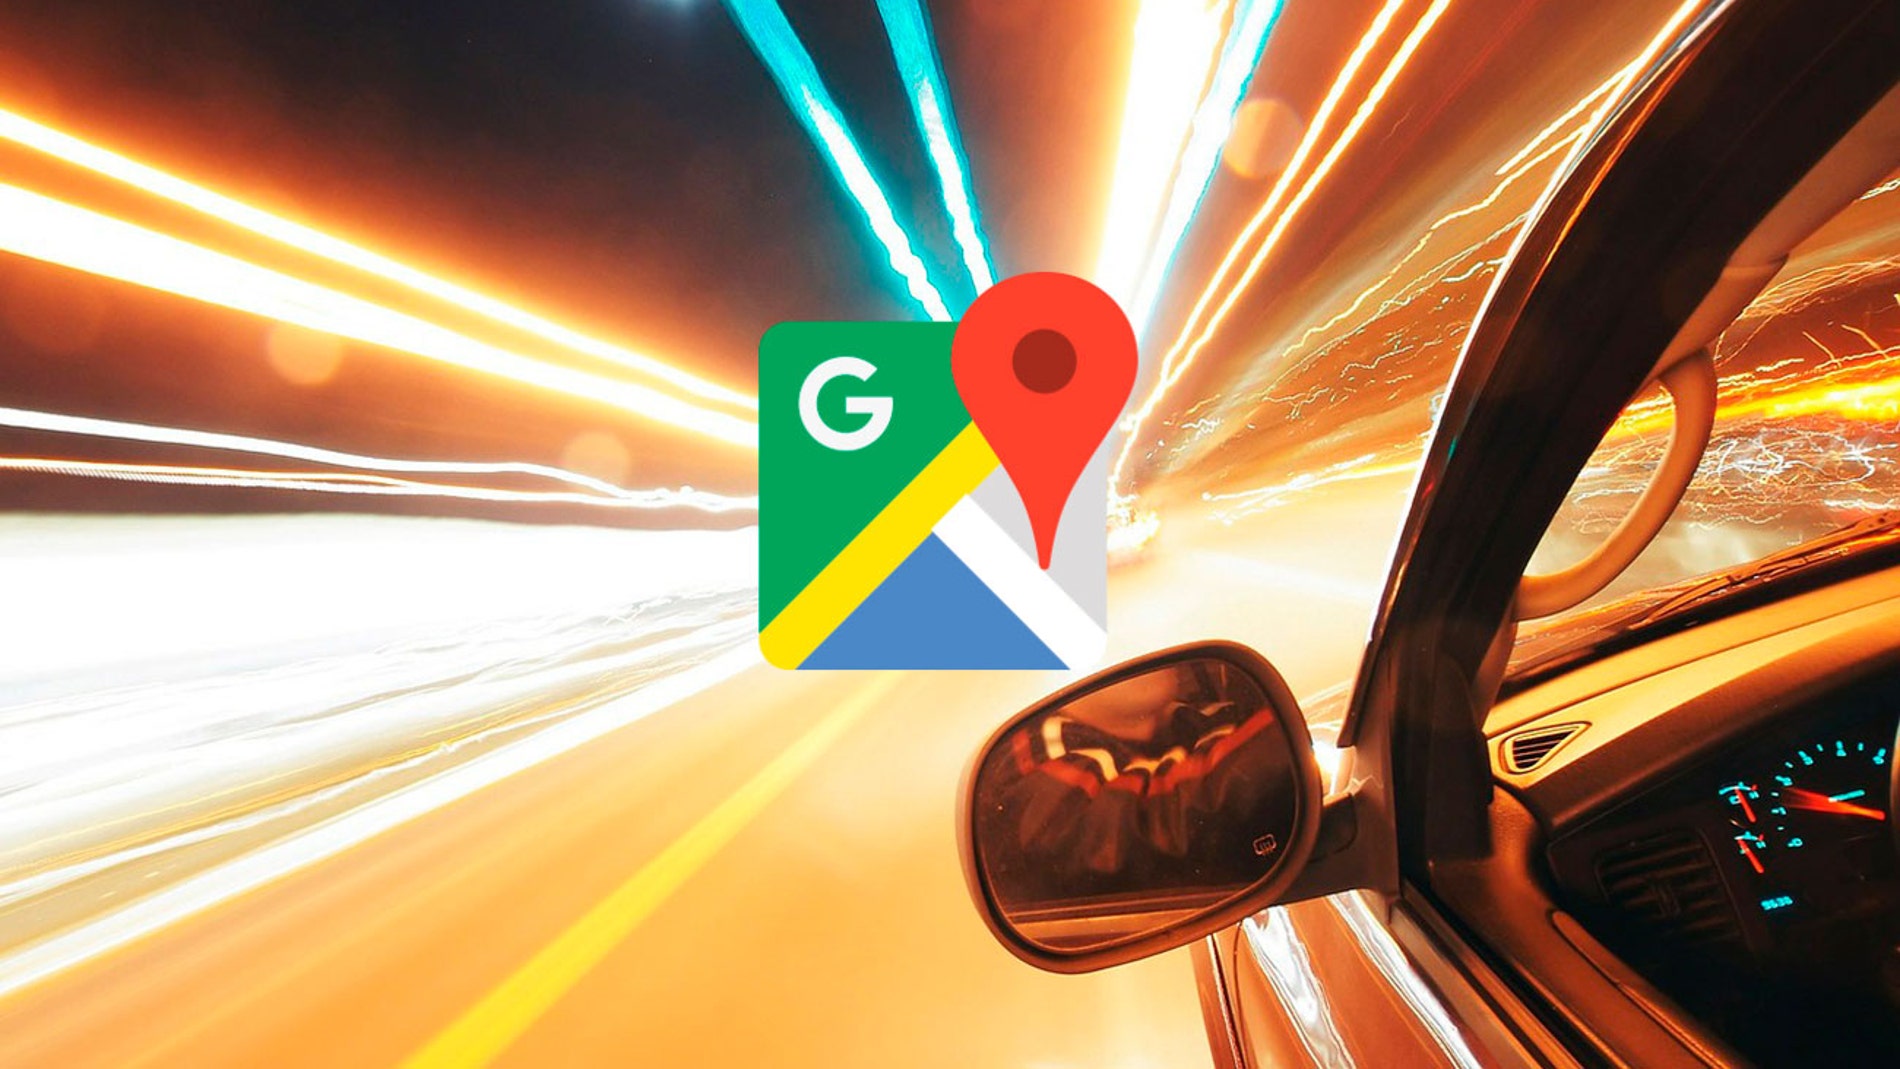 Radares de velocidad Google Maps